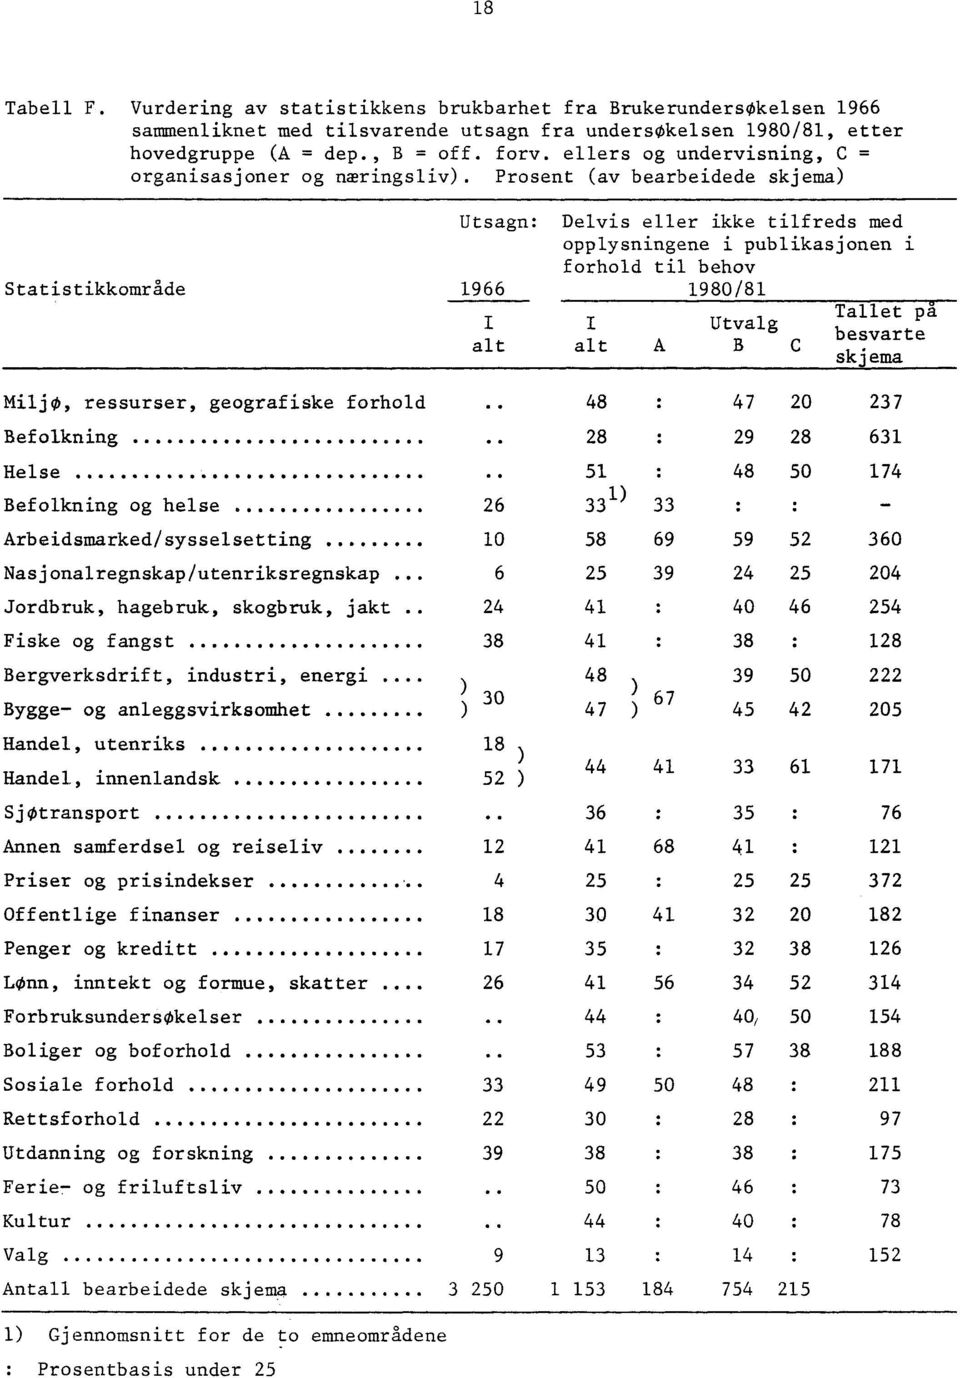 Prosent (av bearbeidede skjema) Statistikkområde Utsagn: Delvis eller ikke tilfreds med opplysningene i publikasjonen i forhold til behov 1966 1980/81 Tallet på Utvalg besvarte alt alt A B C skjema